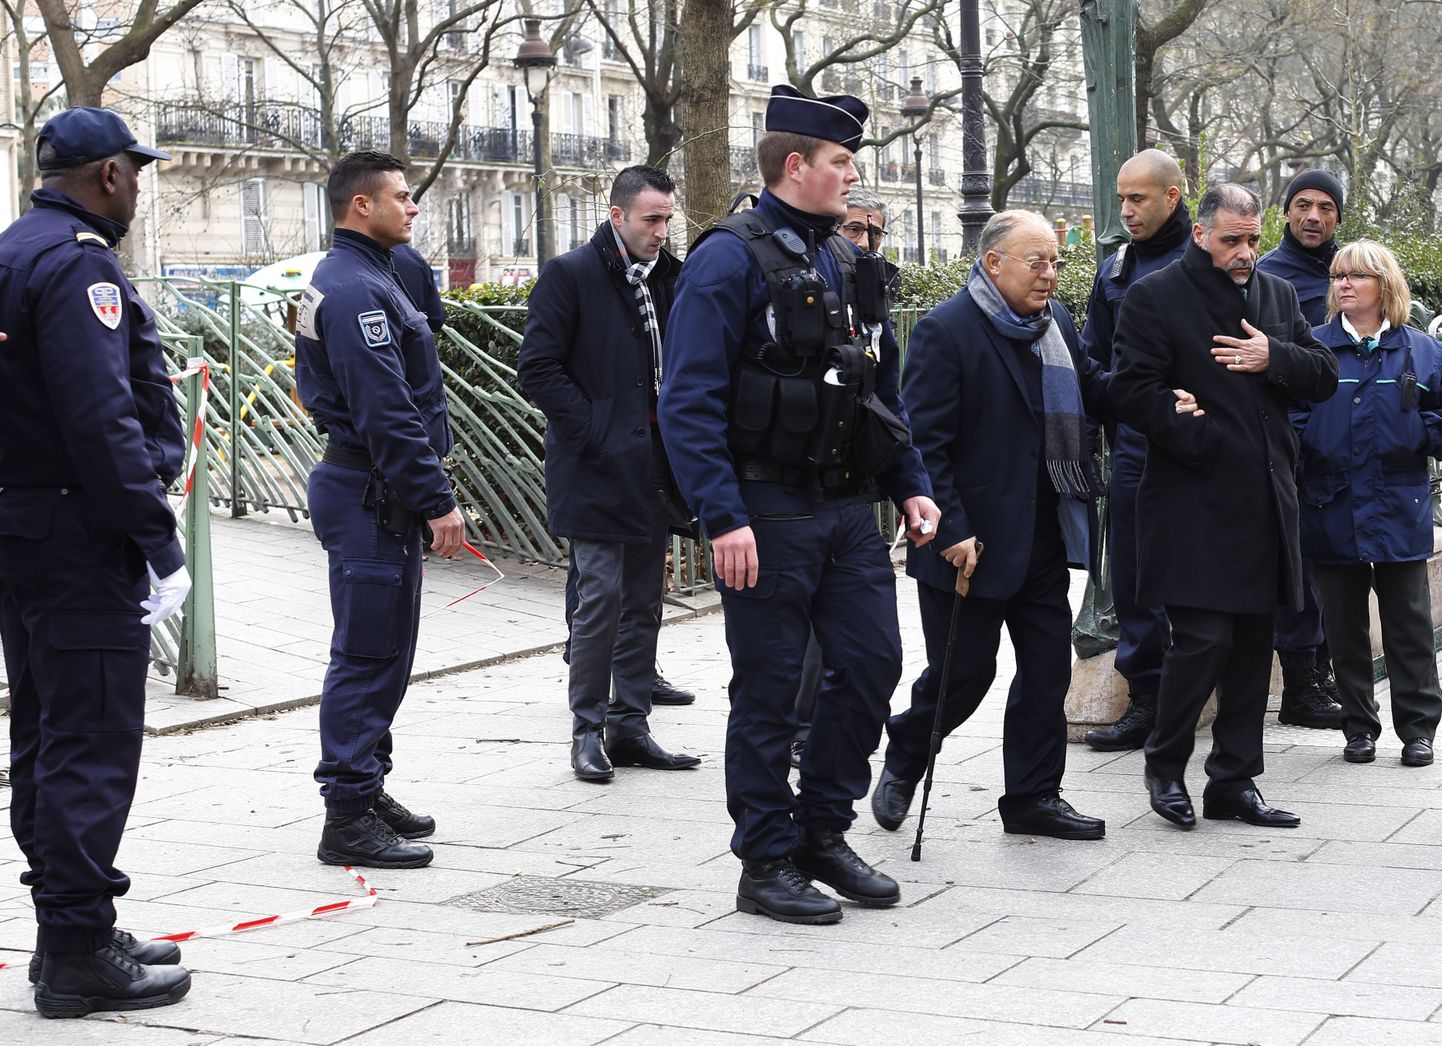 Prantsuse moslemite nõukogu (CFCM) president Dalil Boubakeur (jalutuskepiga) käis täna rünnakupaigas ohvritele austust avaldamas.